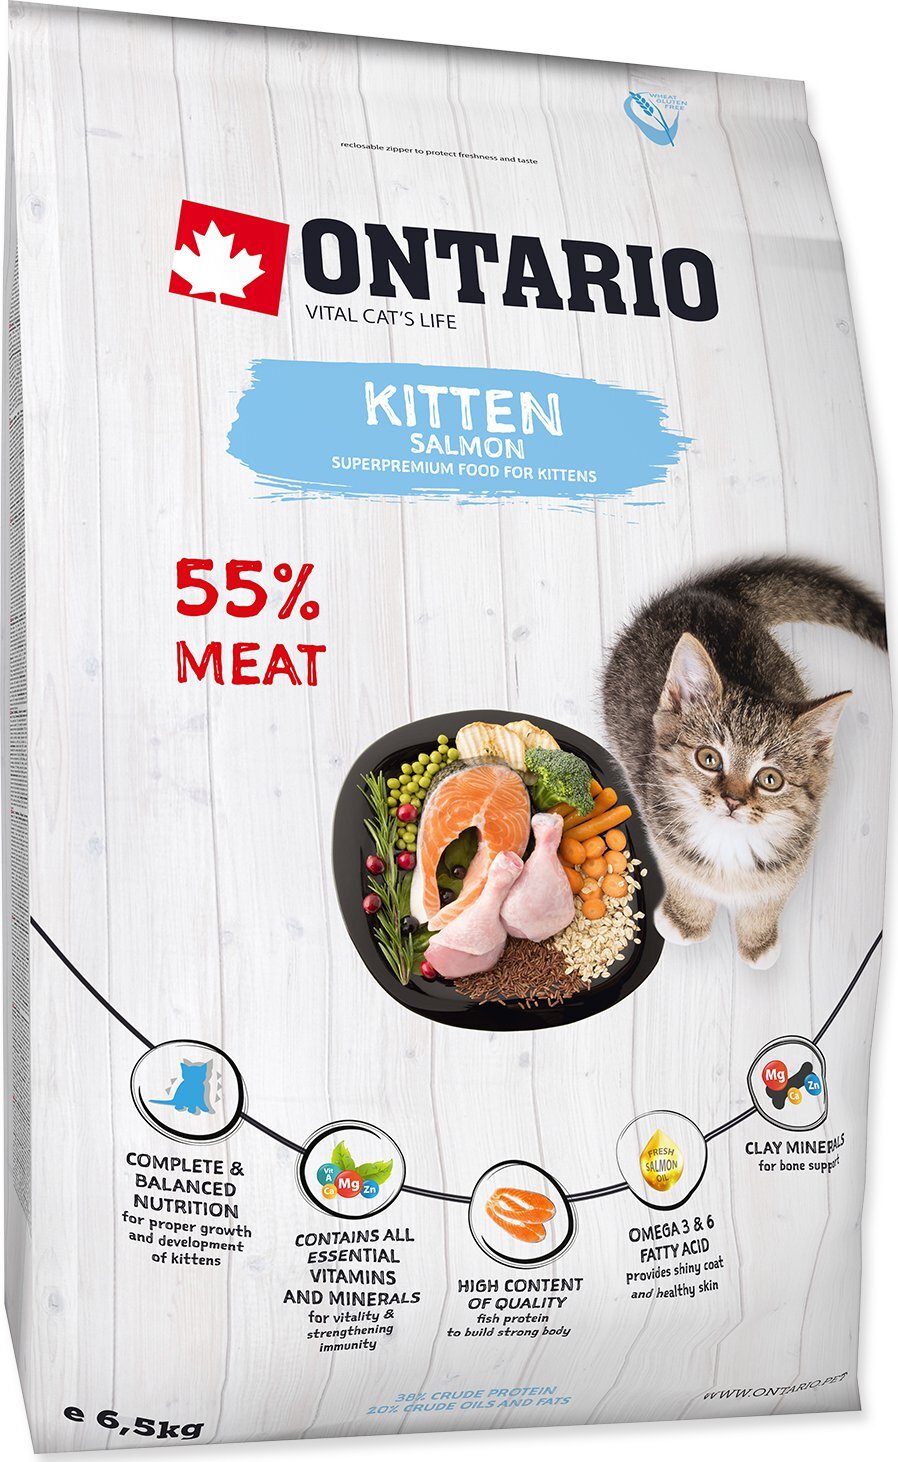 Ontario Kitten Salmon 6.5 kg